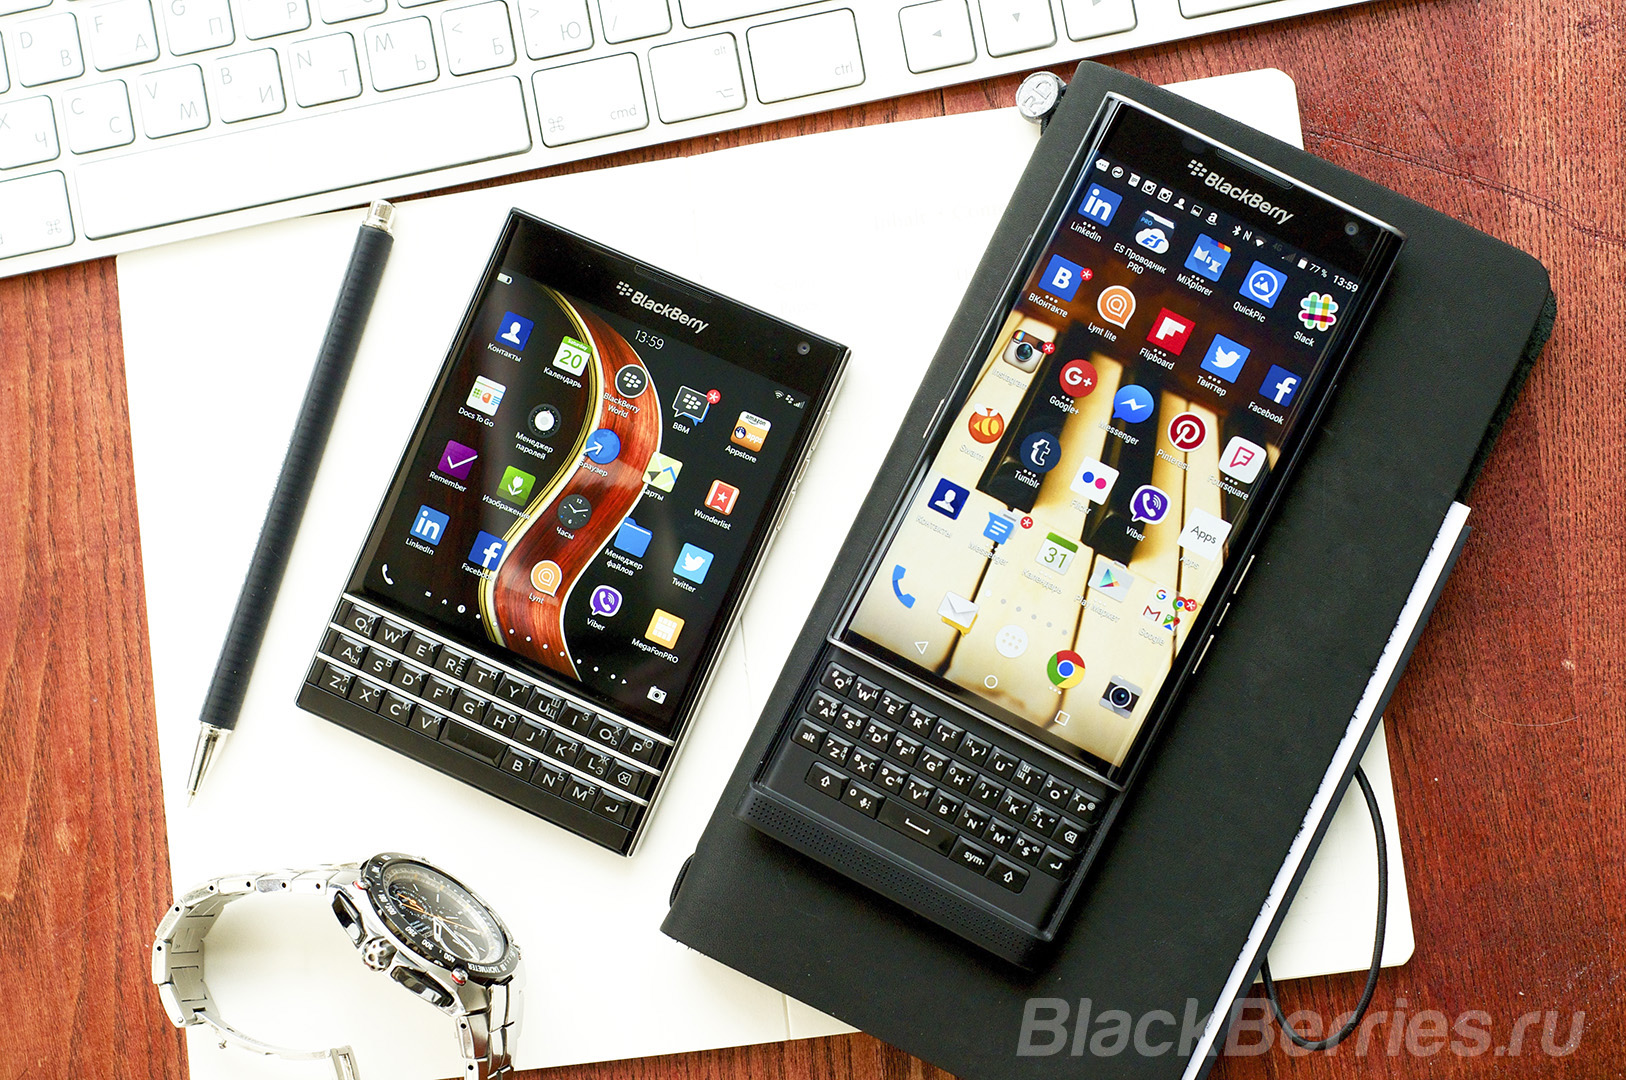 BlackBerry-Apps-20-02-04